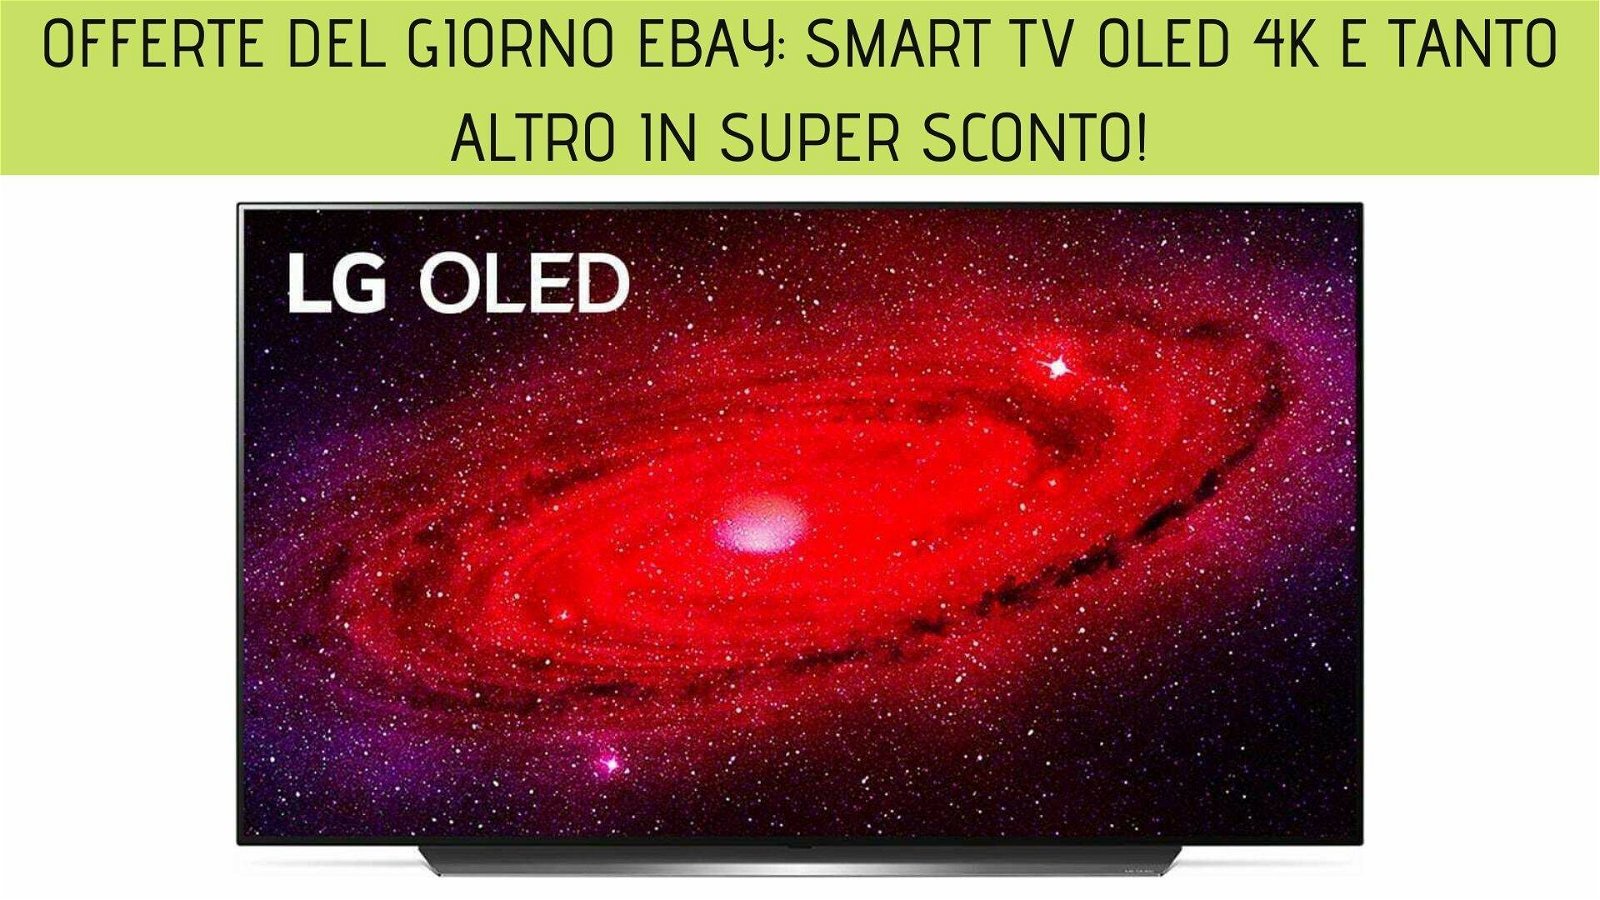 Immagine di Offerte del giorno eBay: Smart TV OLED 4K e tanto altro in super sconto!